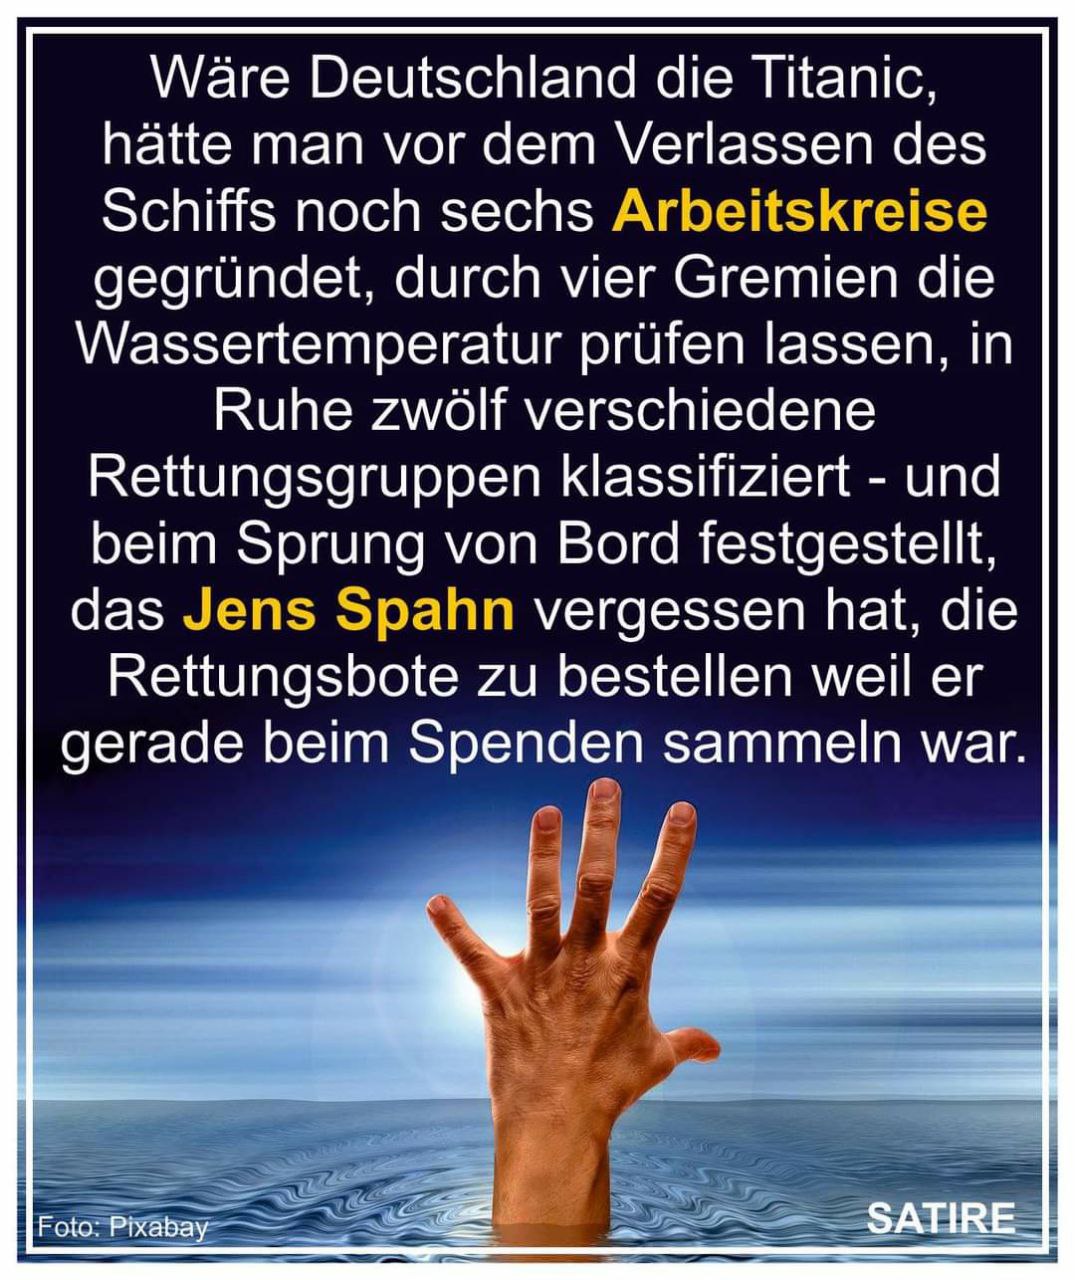 Jens Spahn, Politik und die Titatnic